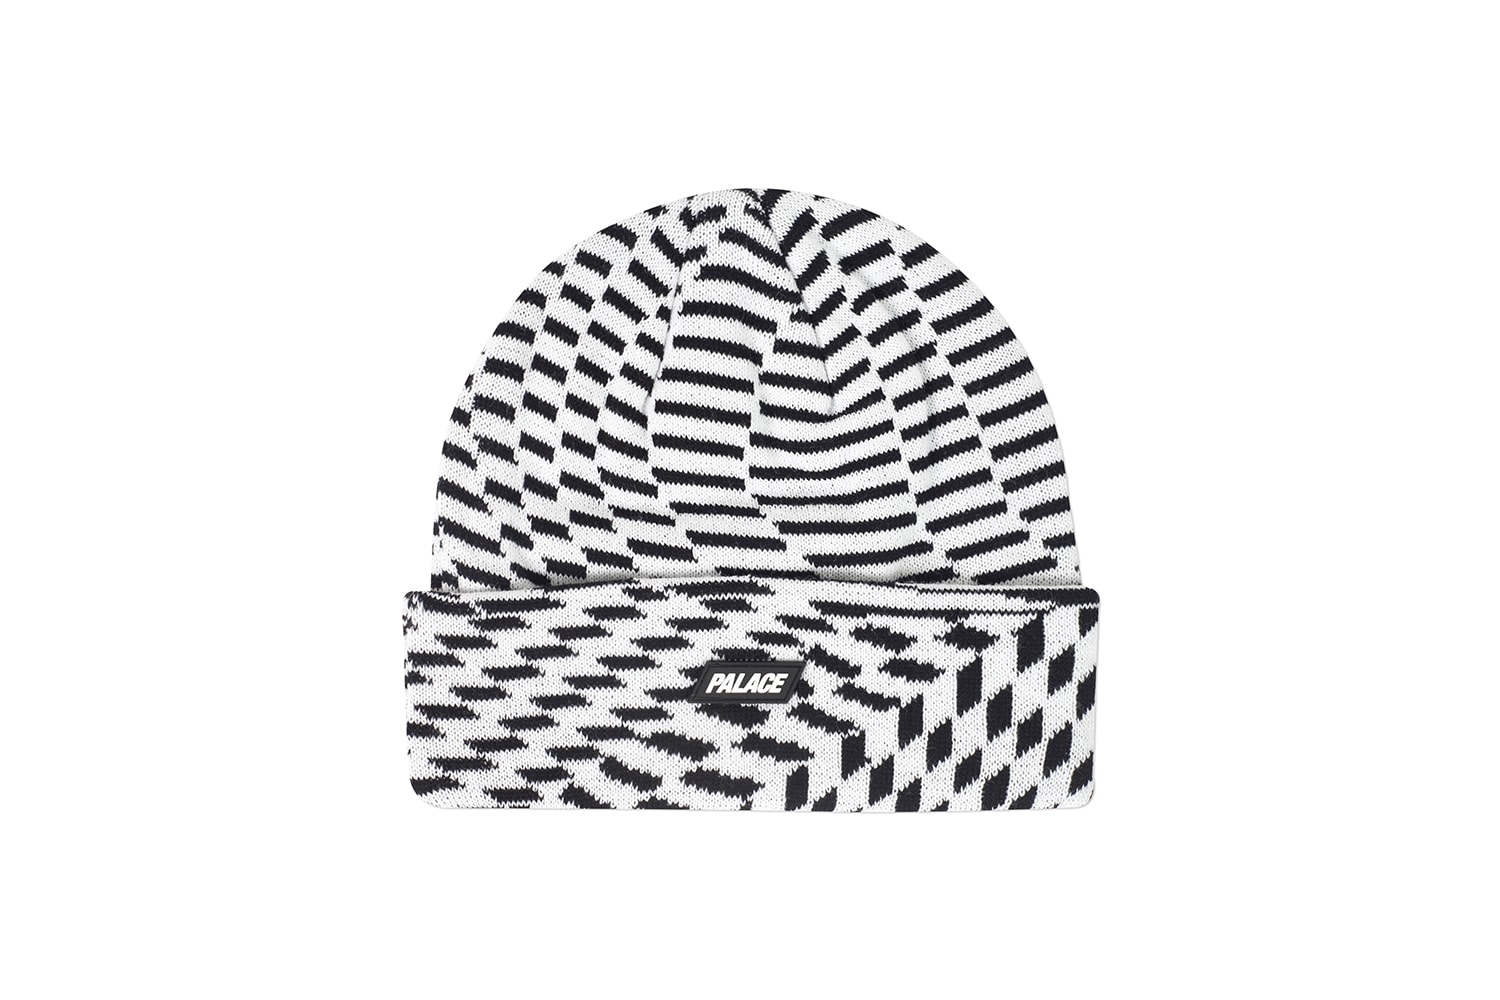 팔라스 2019 가을 컬렉션, 여섯 번째 발매 제품군 - 봄버 재킷, 윈드 브레이커, 비니, 볼캡